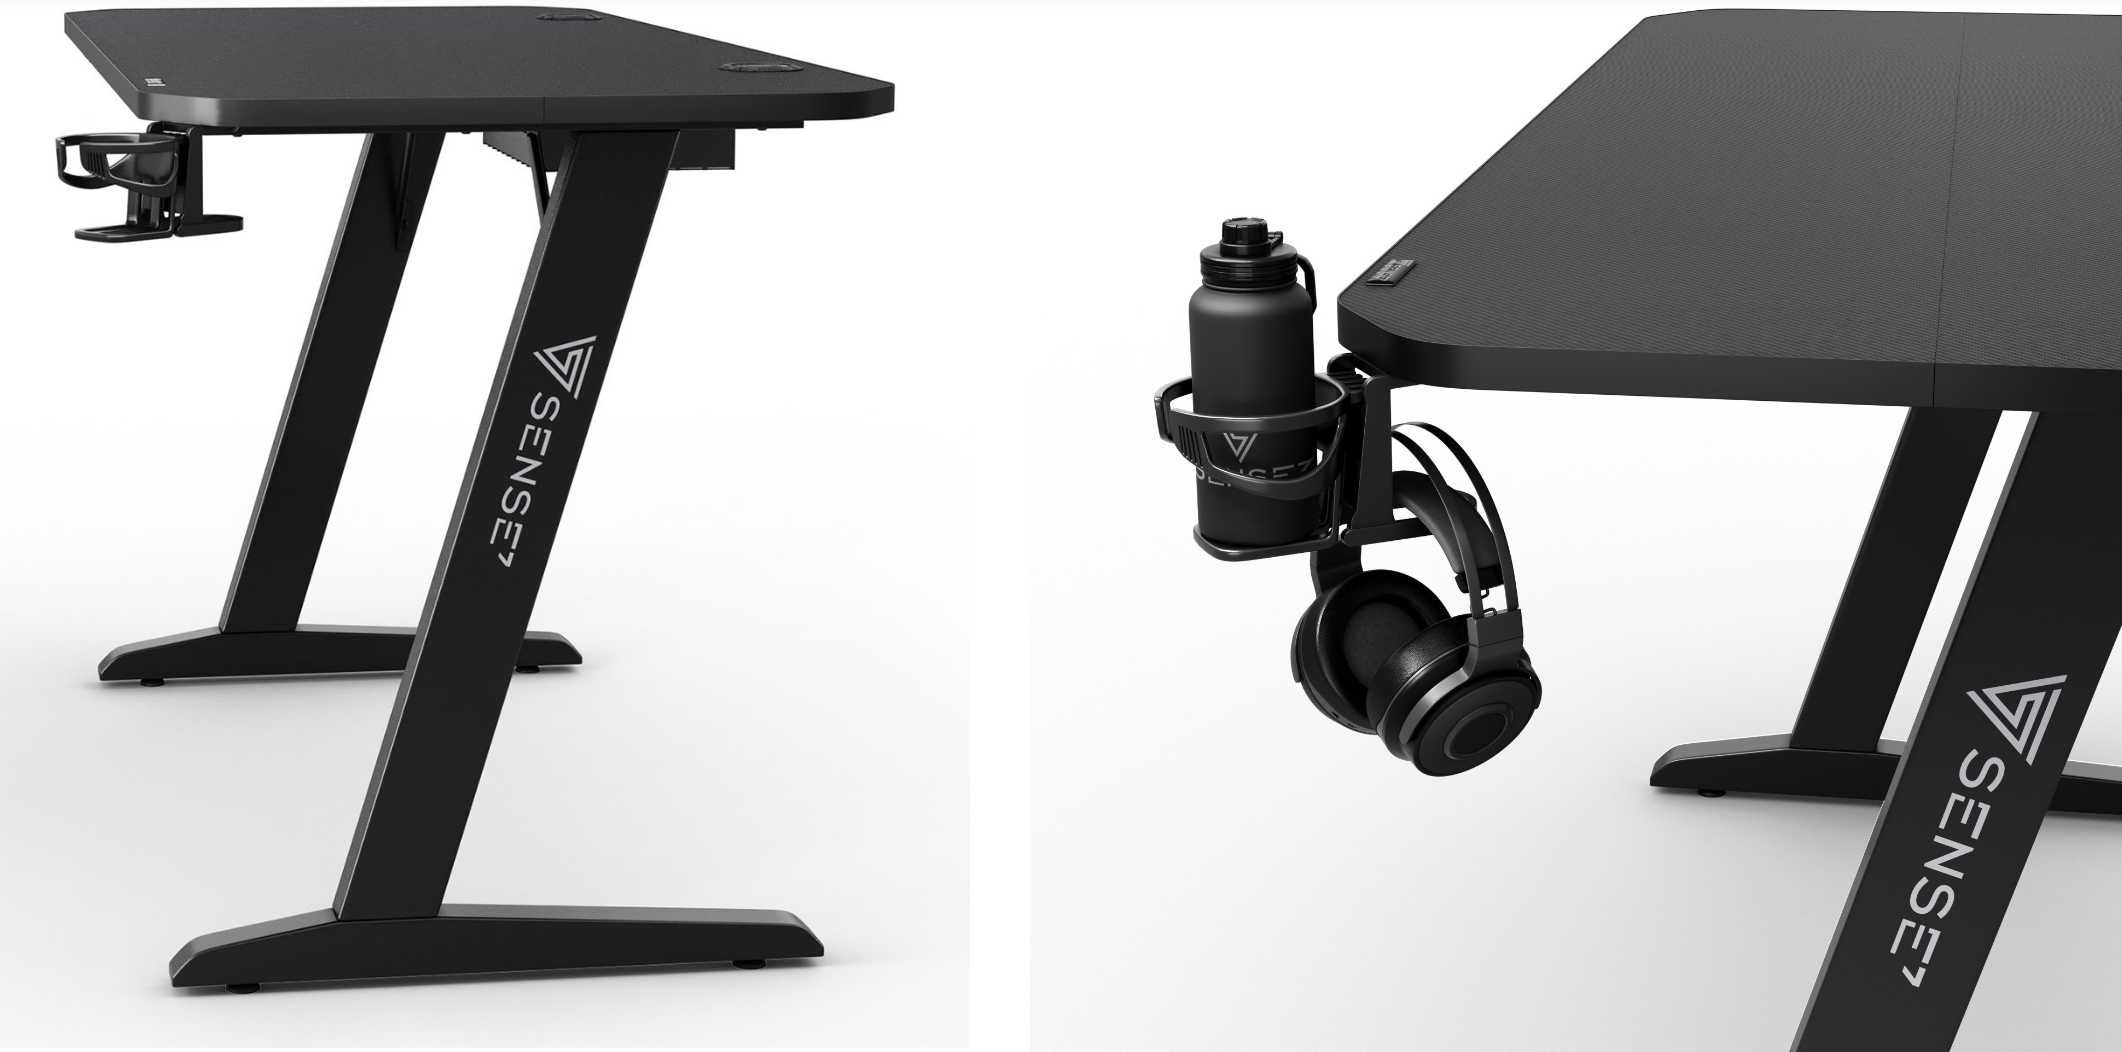 Компютерний стіл SENSE7 Nomad Basic Геймерский компьютерный стол